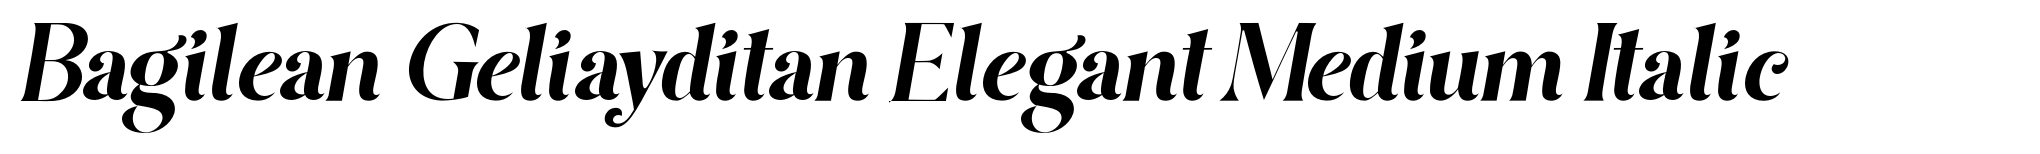 Bagilean Geliayditan Elegant Medium Italic image